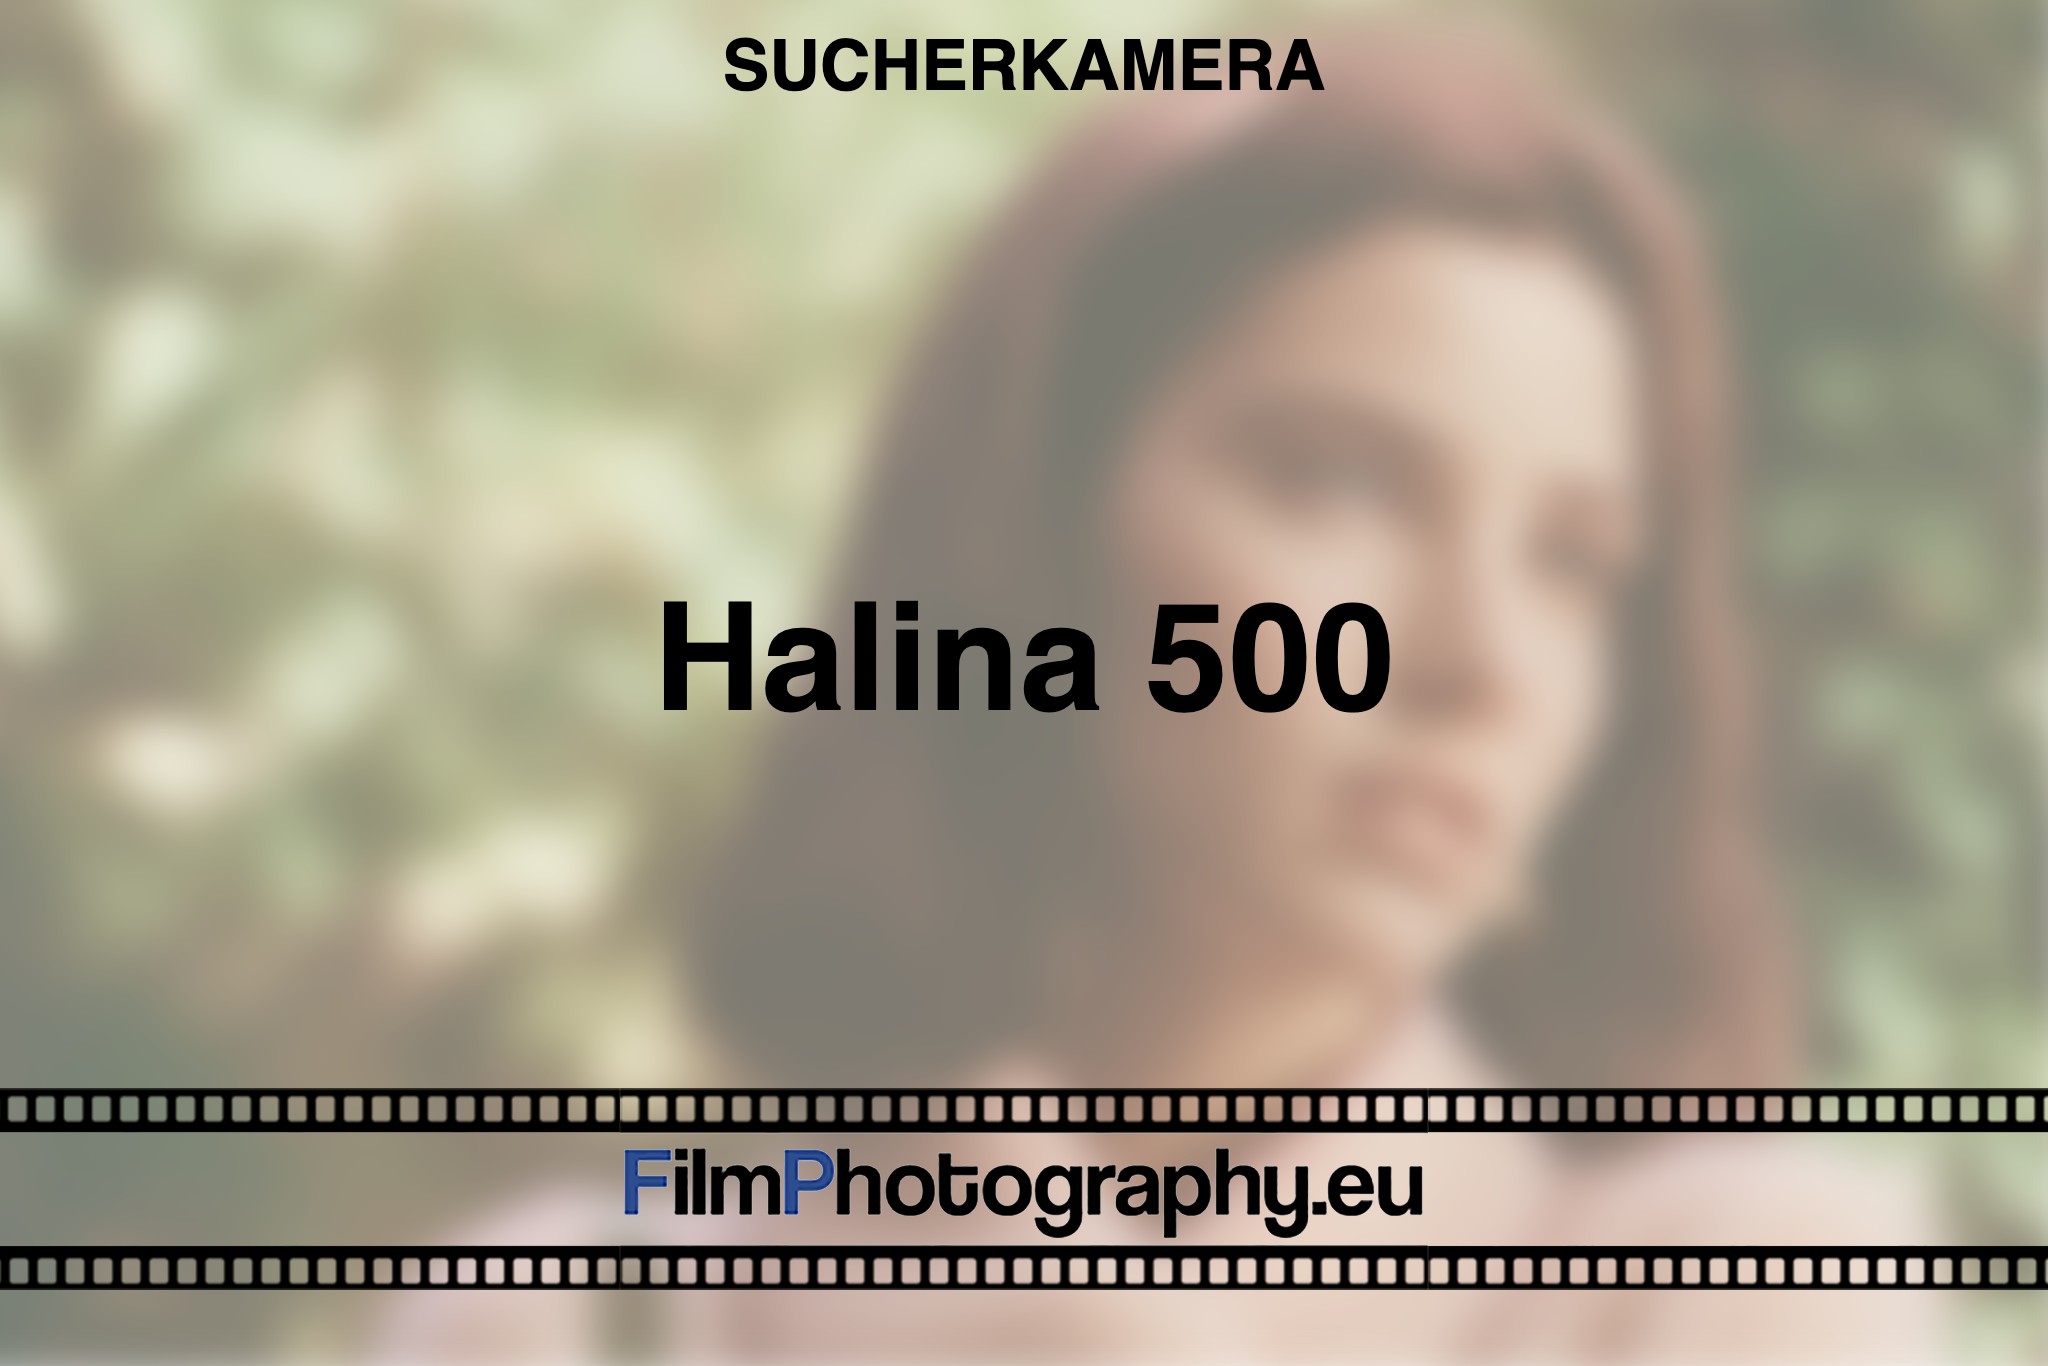 halina-500-sucherkamera-bnv